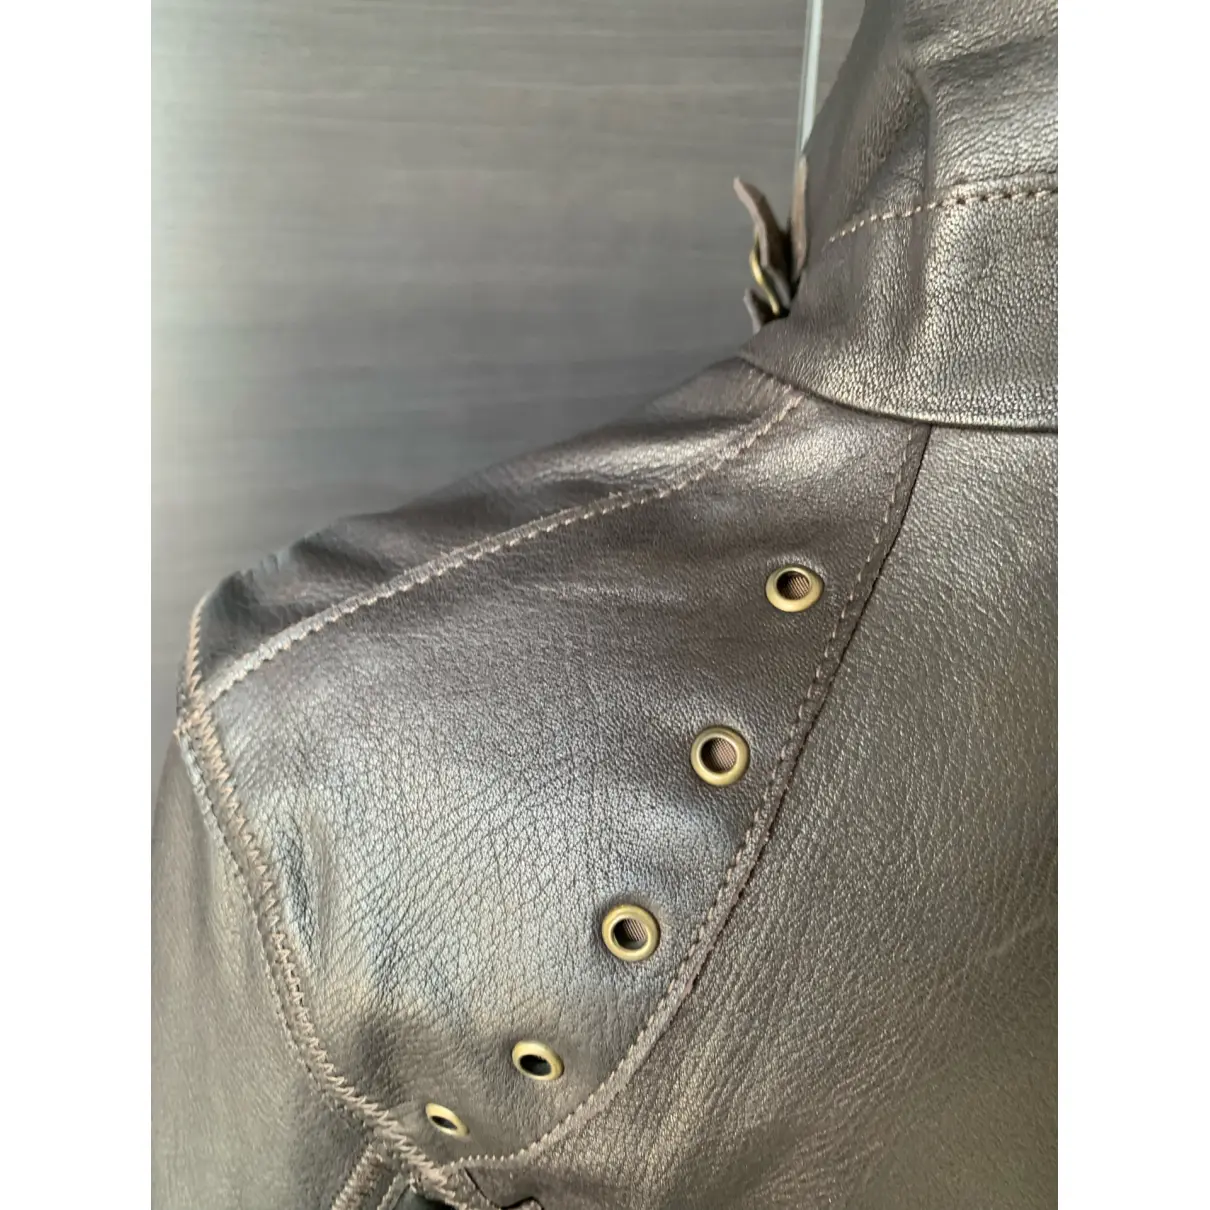 Leather jacket Just Cavalli - Vintage